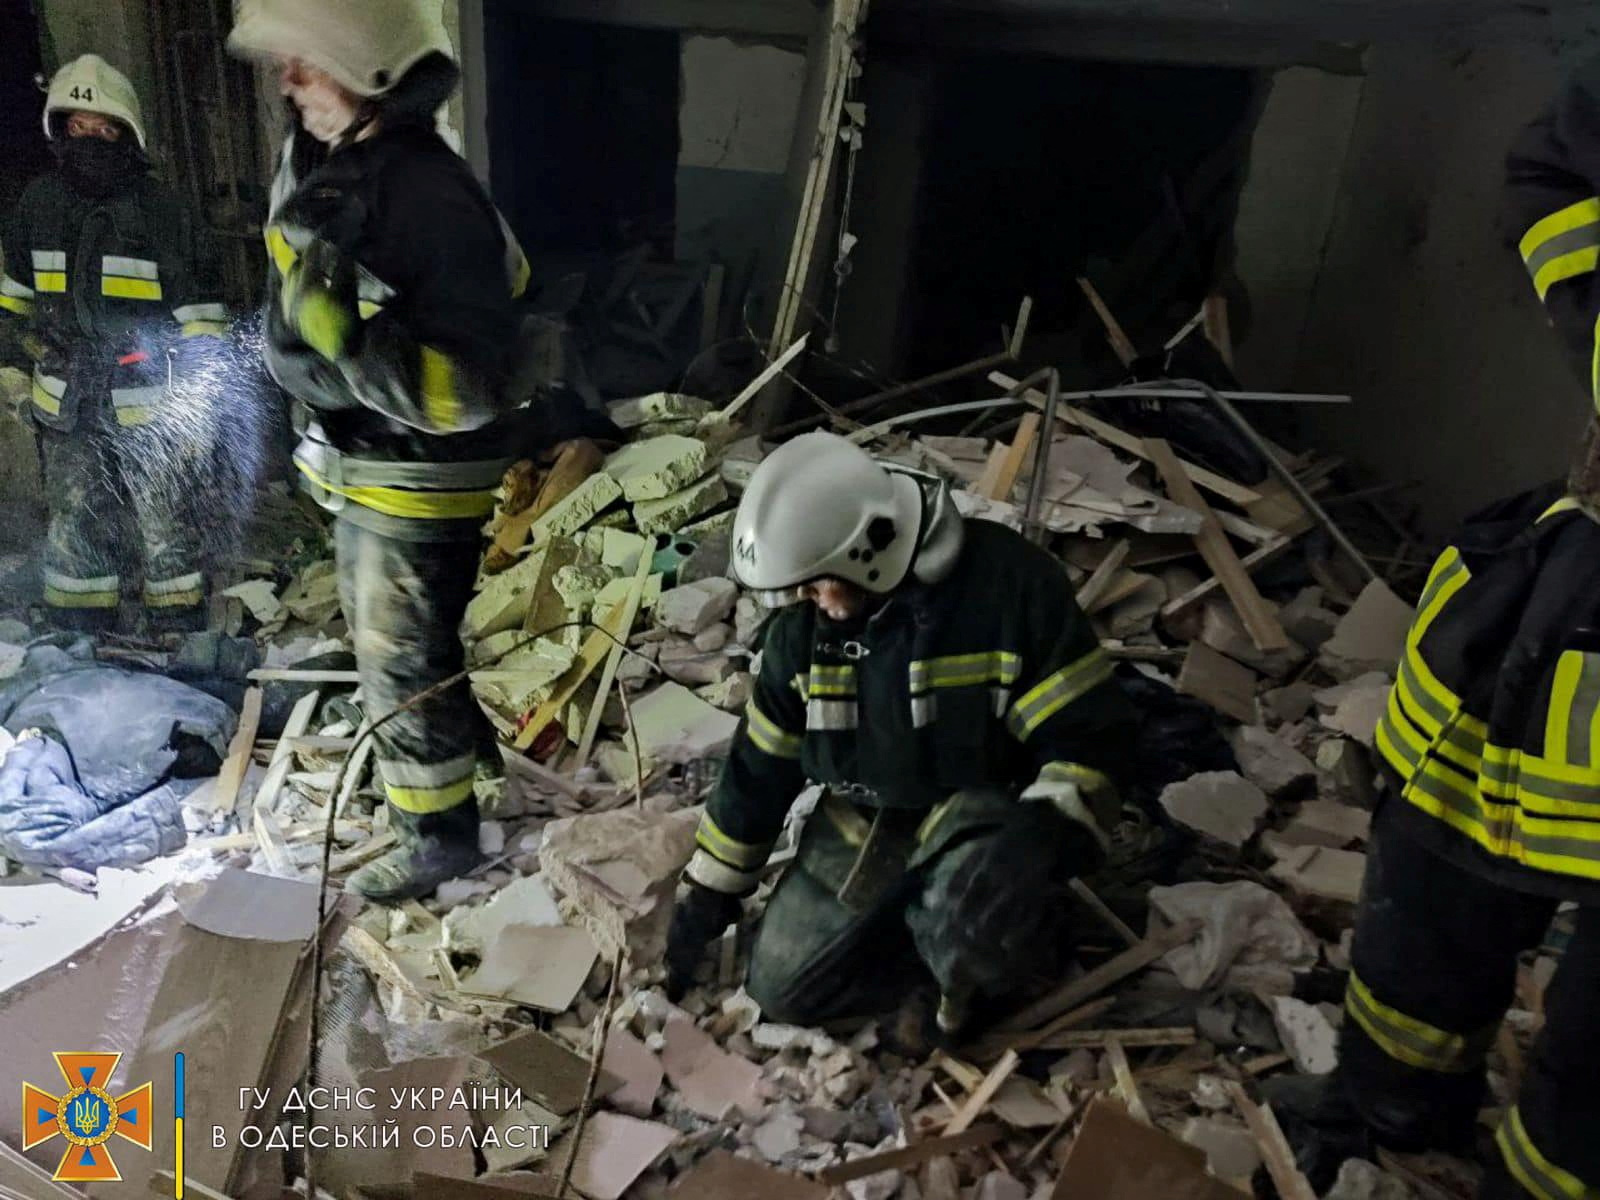 Ουκρανία: Οι πρώτες εικόνες από την πολυκατοικία στην Οδησσό που χτυπήθηκε από πύραυλο – Αυξάνεται ο αριθμός των νεκρών